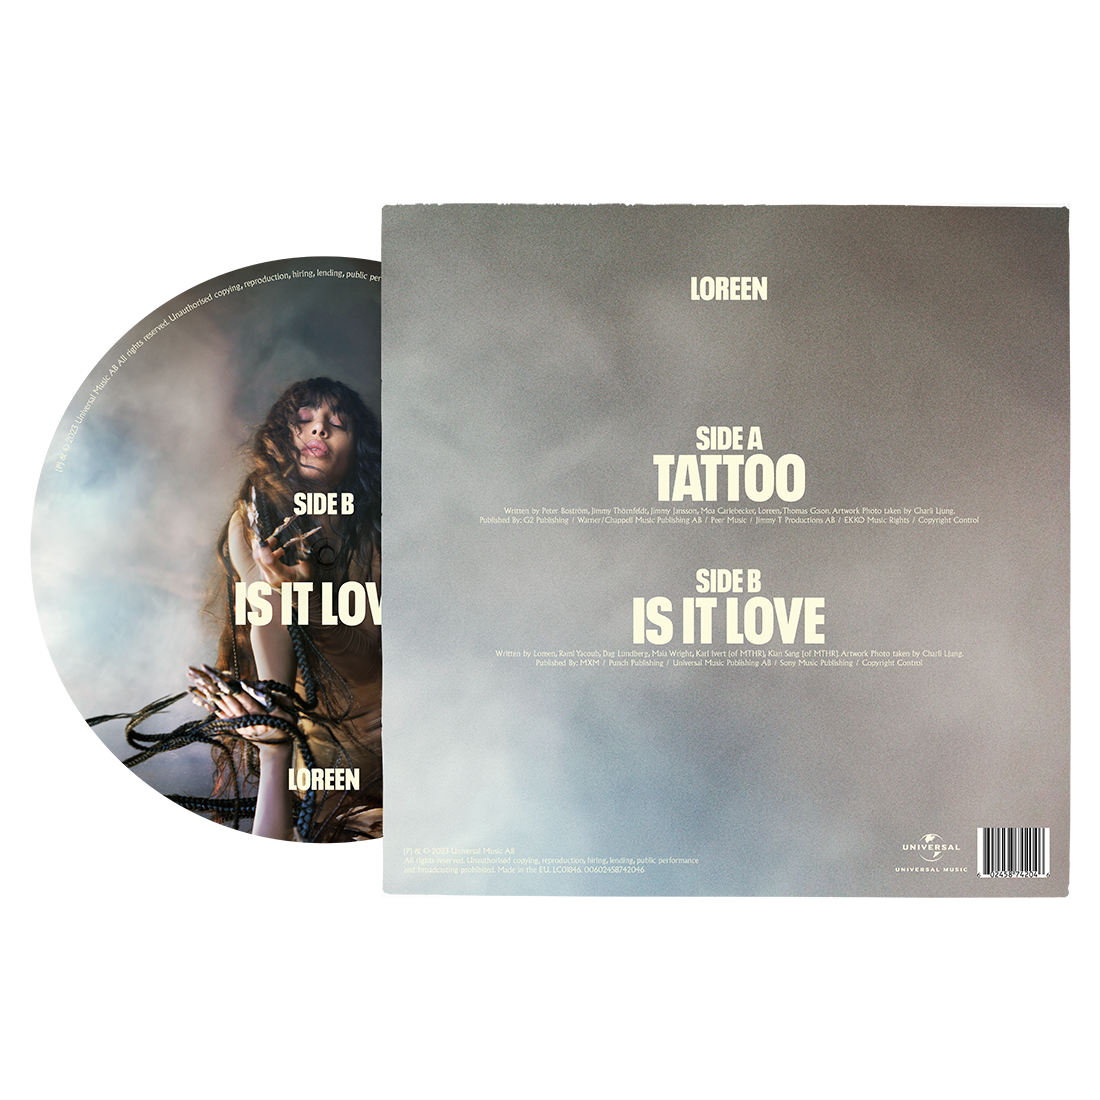 Loreen - Tattoo / Is It Love 7" Vinyl